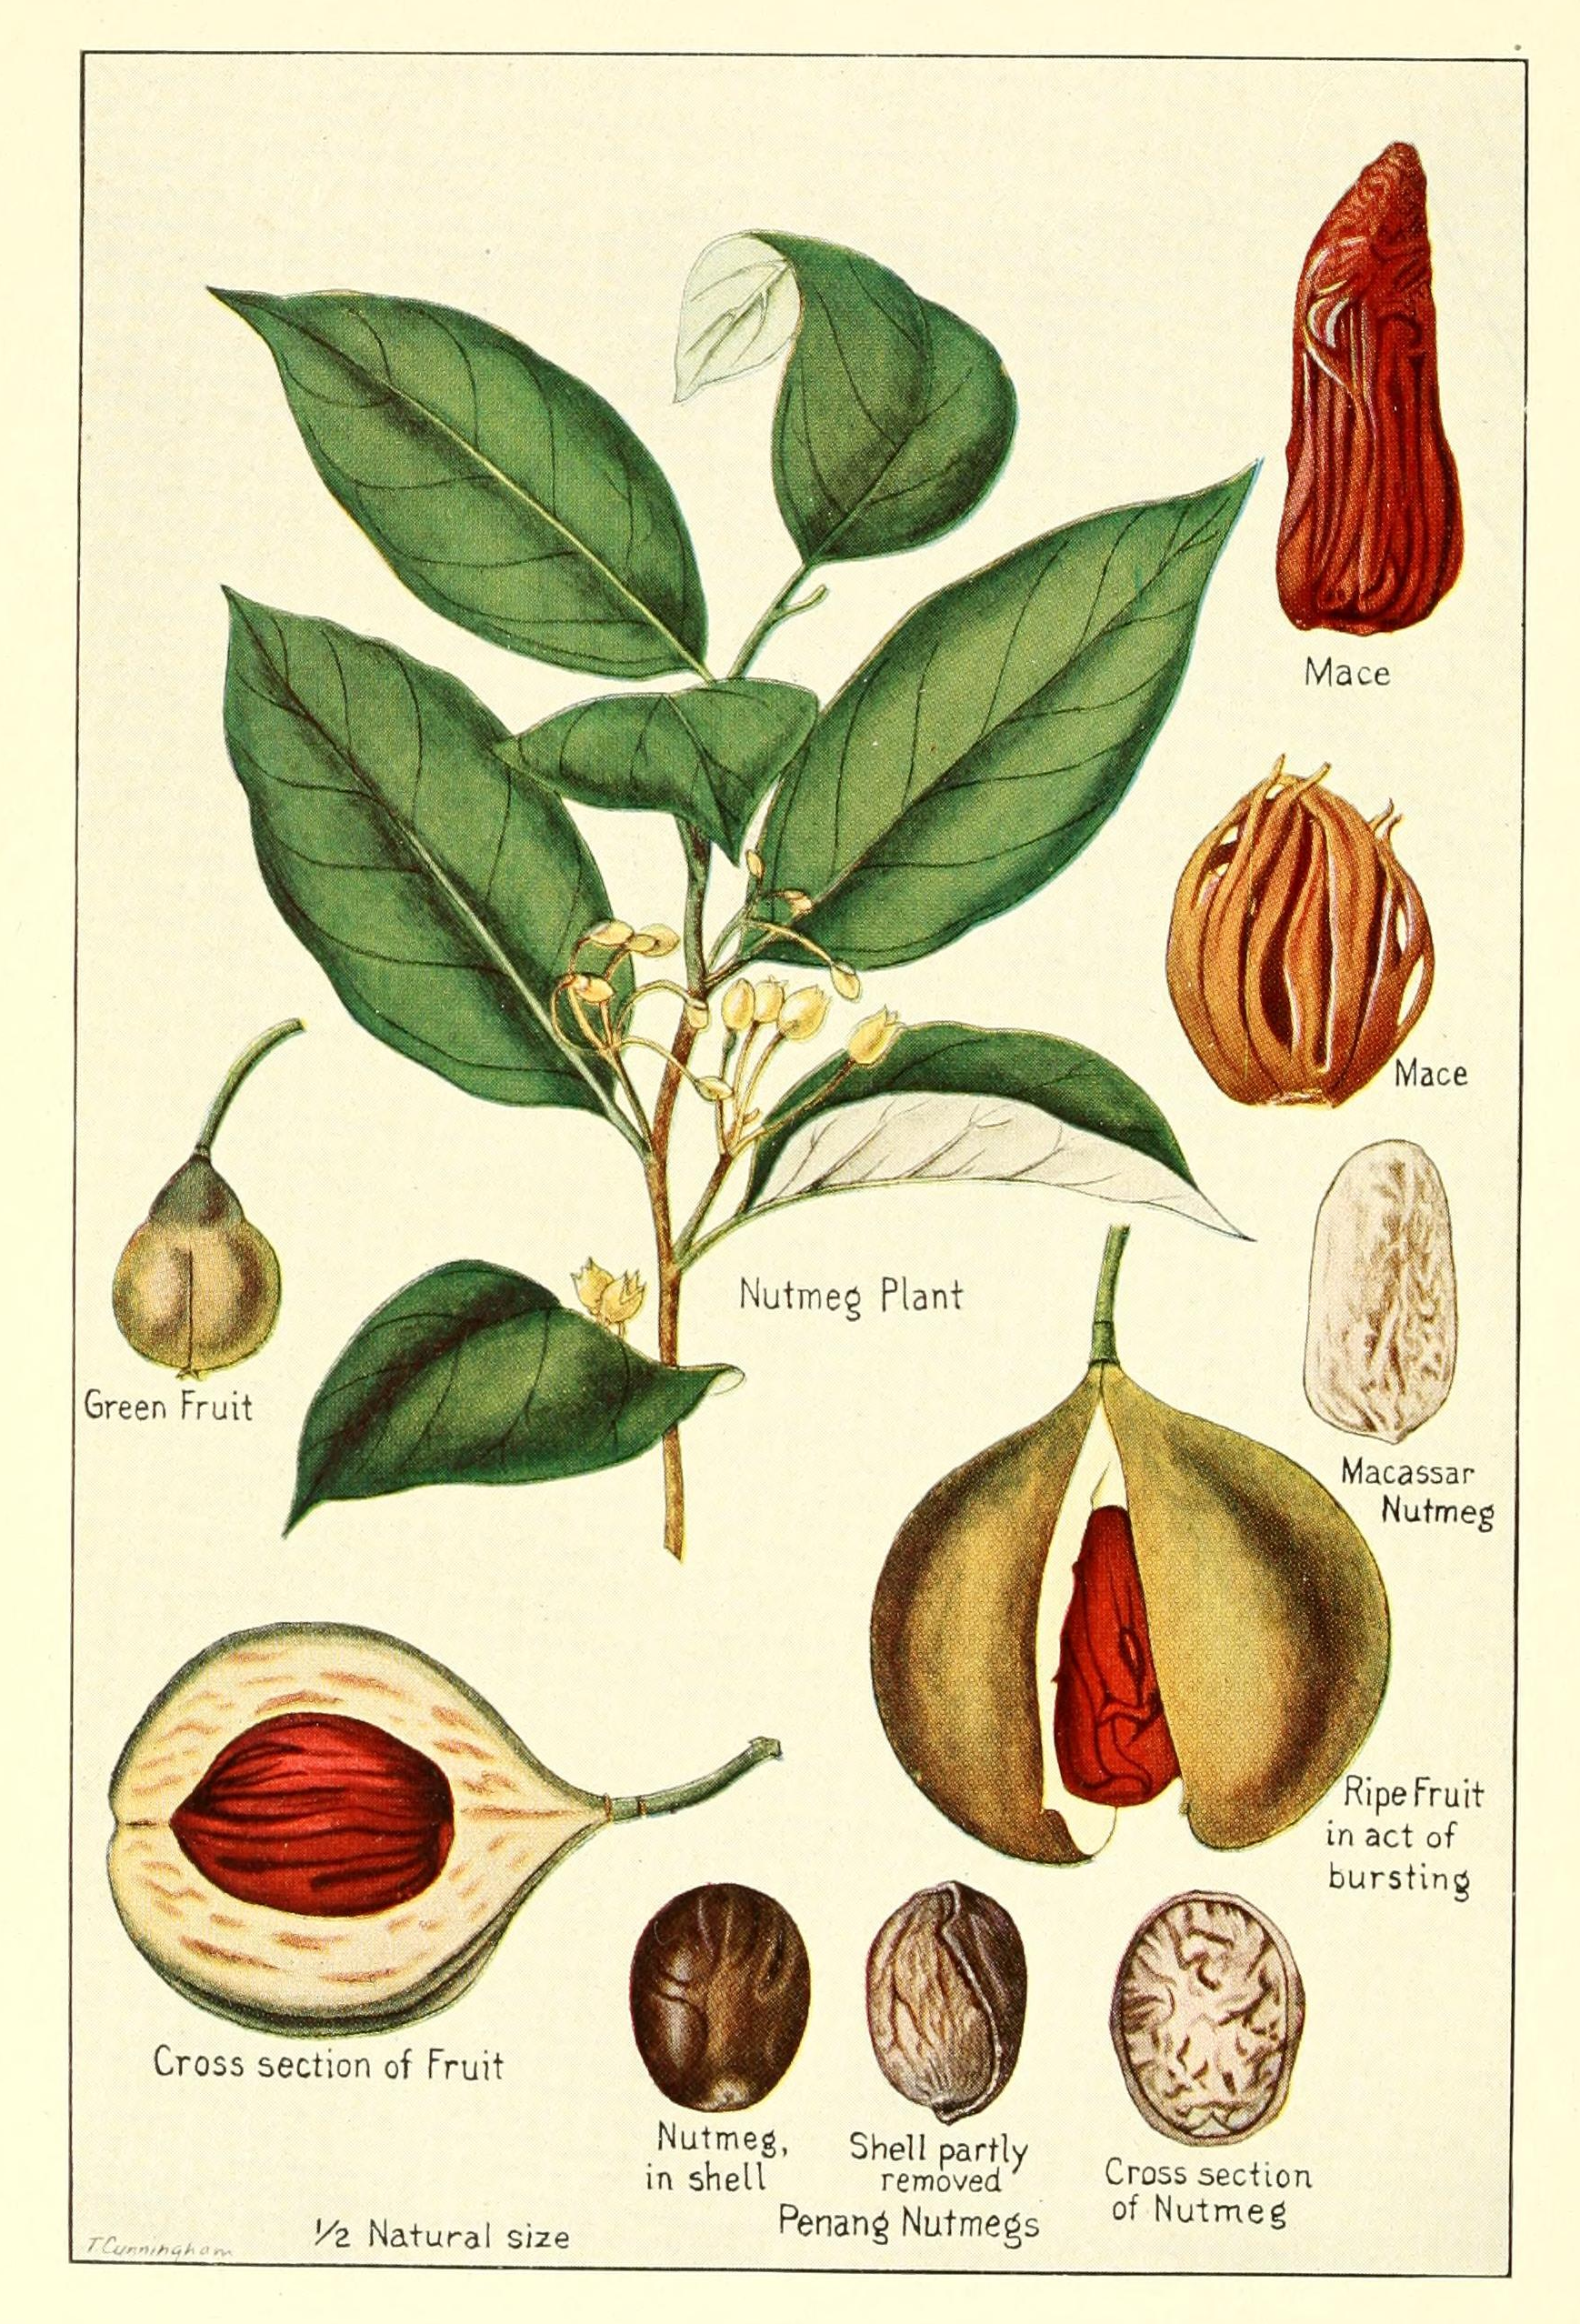 La pianta della noce moscata e il frutto da cui viene estratta la spezia. (Fonte: Wikipedia.org)